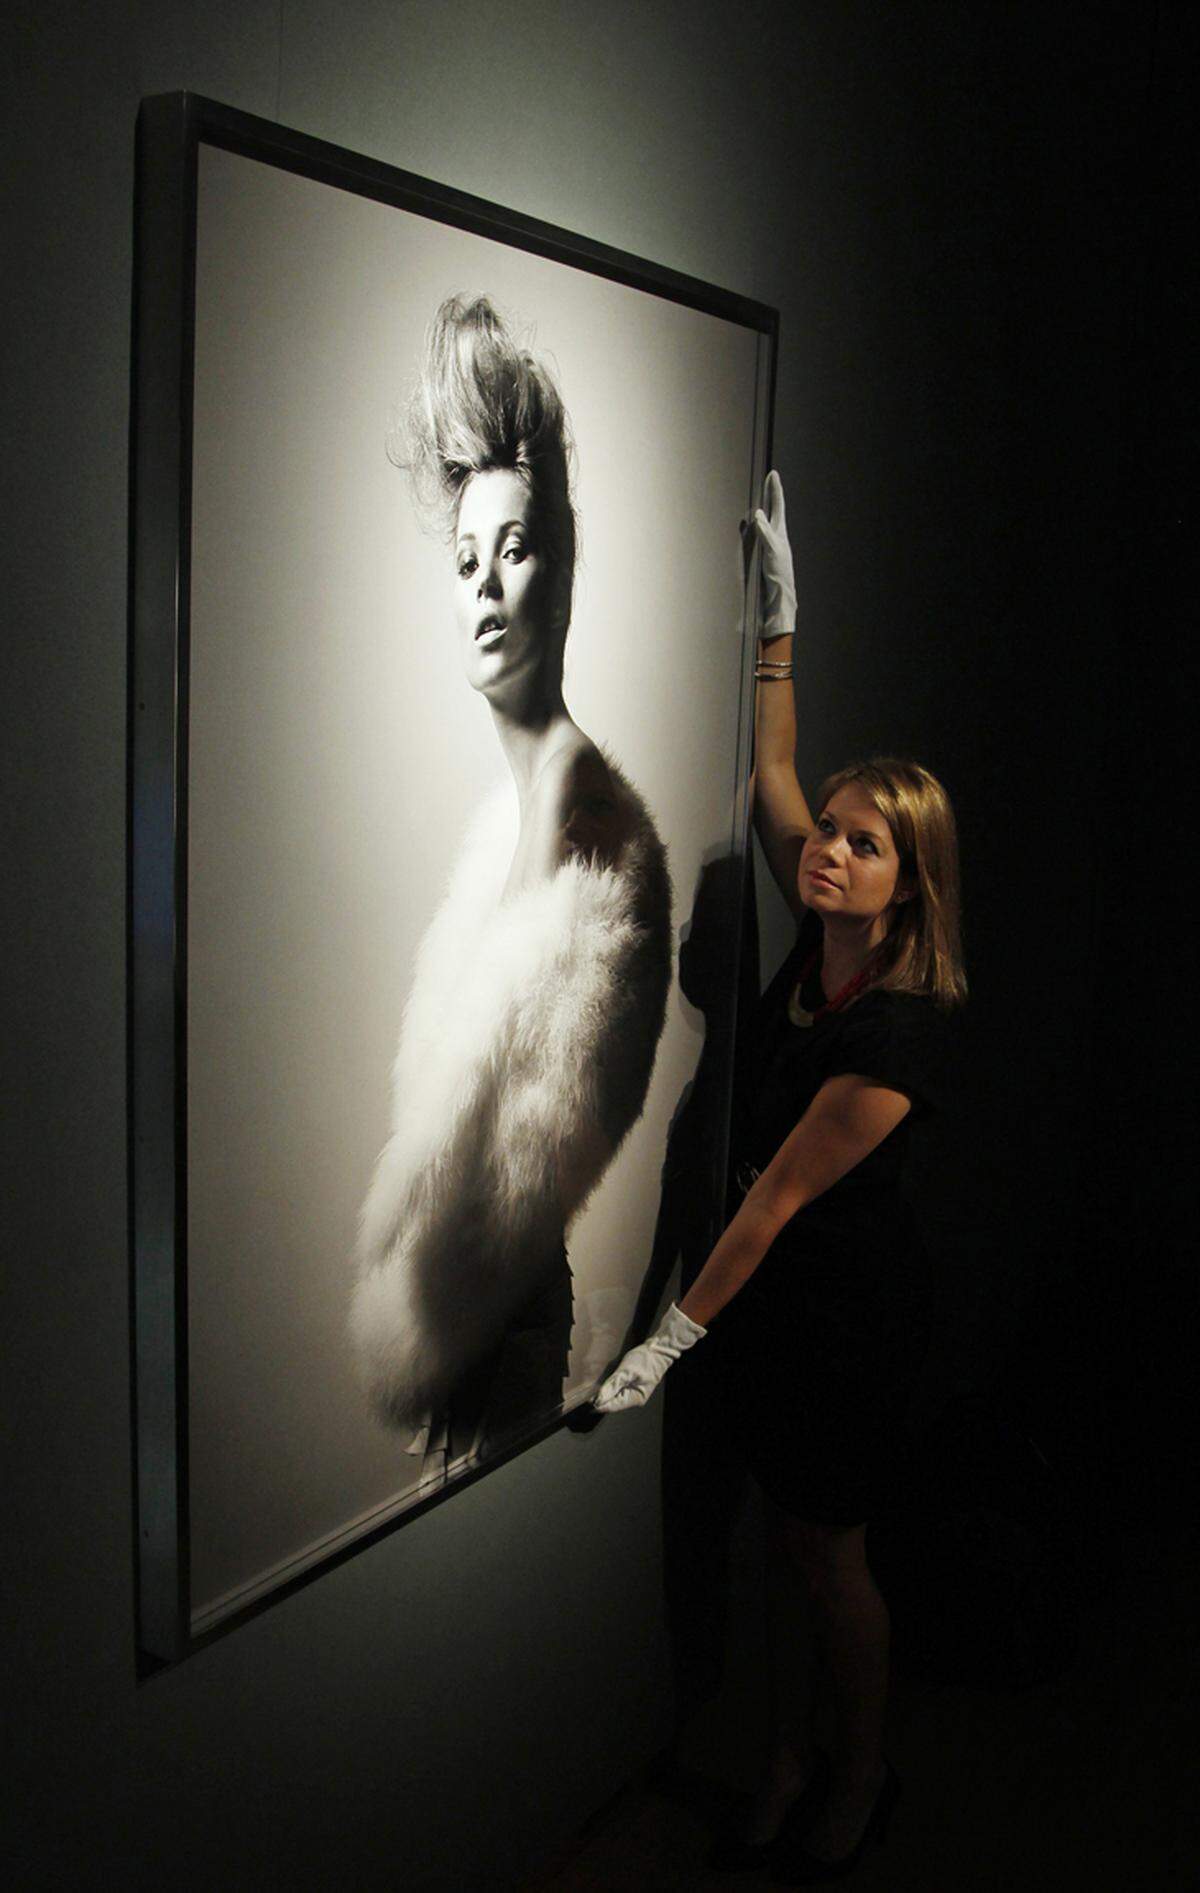 2004 schoss Fotograf David Sims 2004 dieses Bild für die Vogue Paris. Es soll für etwa 16.500 Euro versteigert werden.